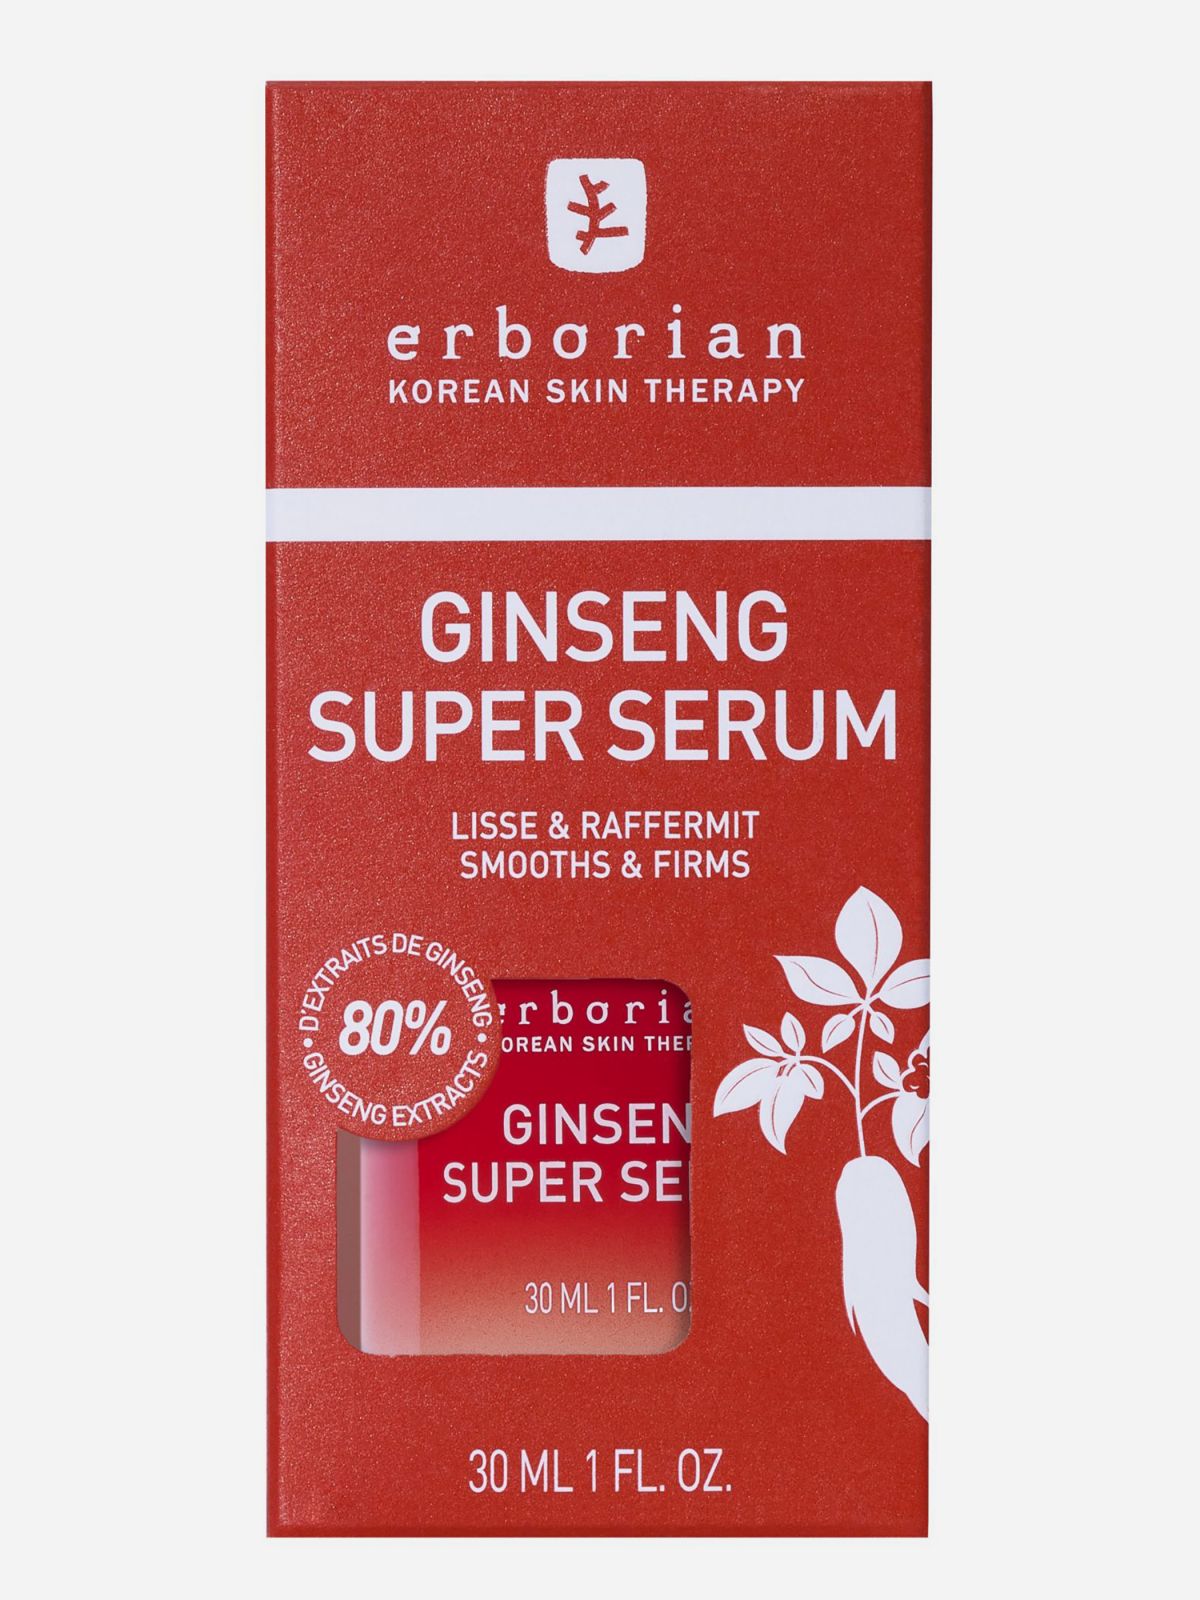  סופר סרום ג'ינסנג Ginseng Super Serum  של ERBORIAN